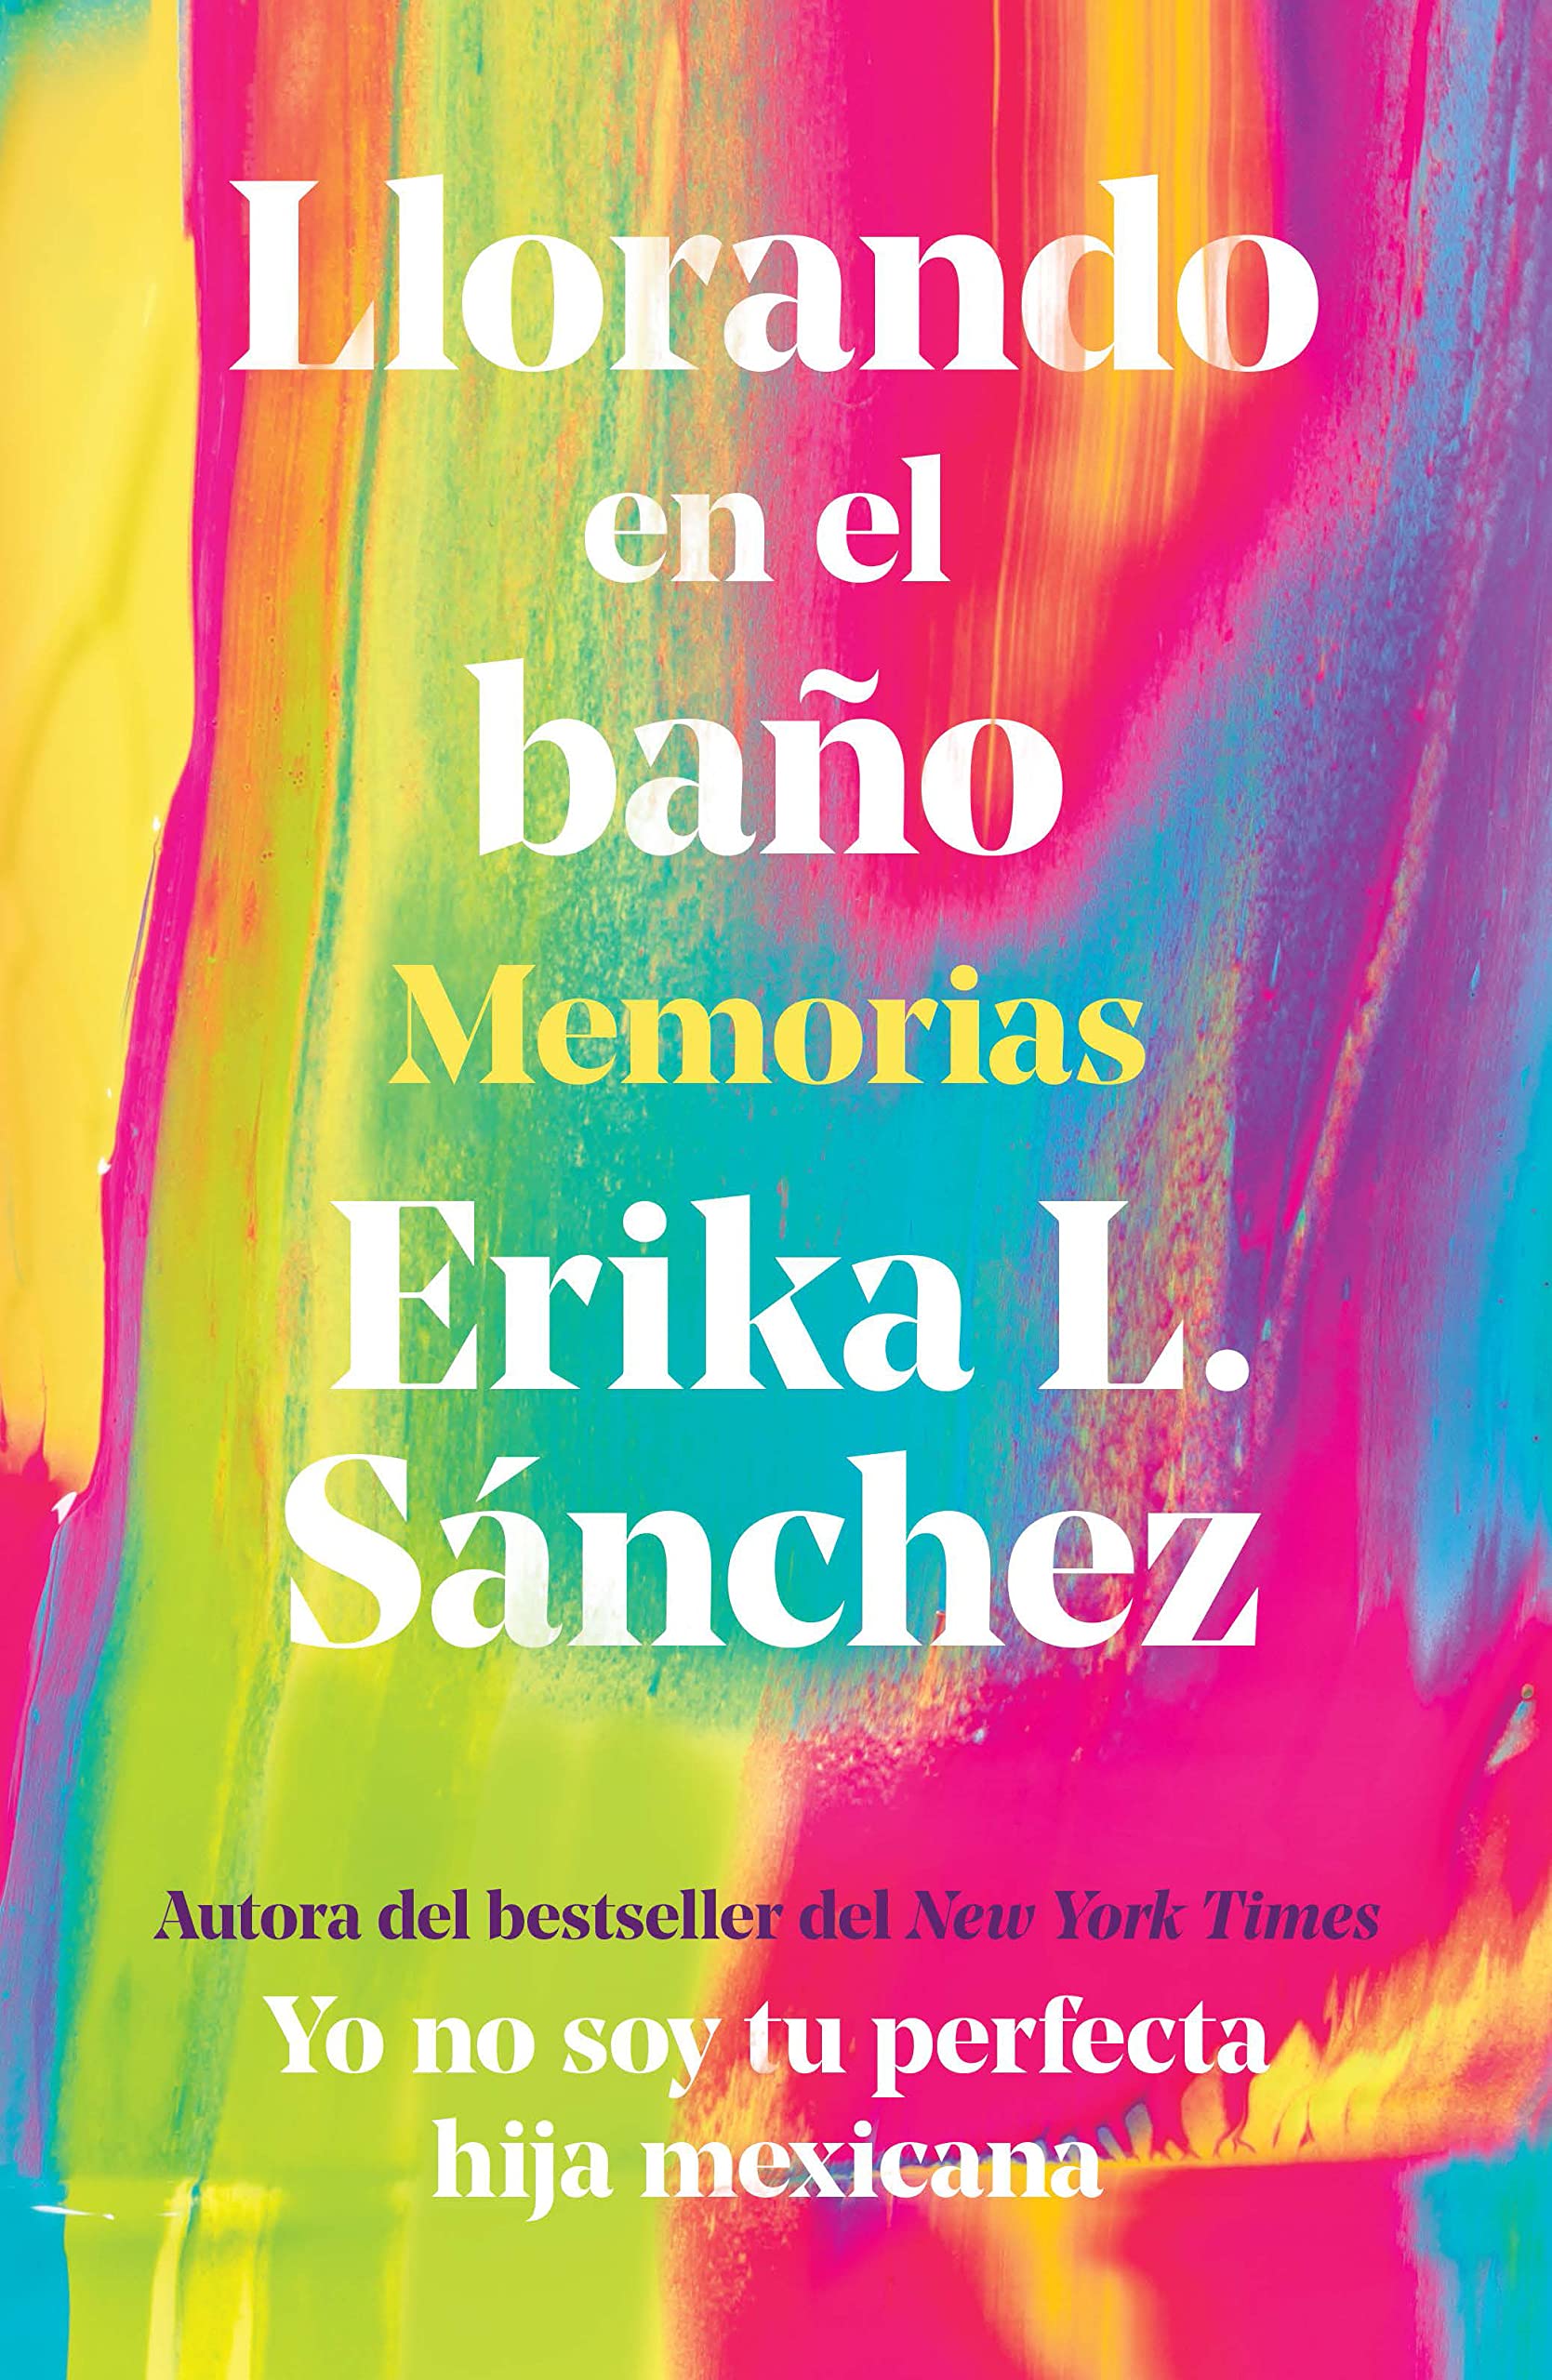 Llorando en el baño: Memorias / Crying in the Bathroom: A Memoir (Spanish Edition)